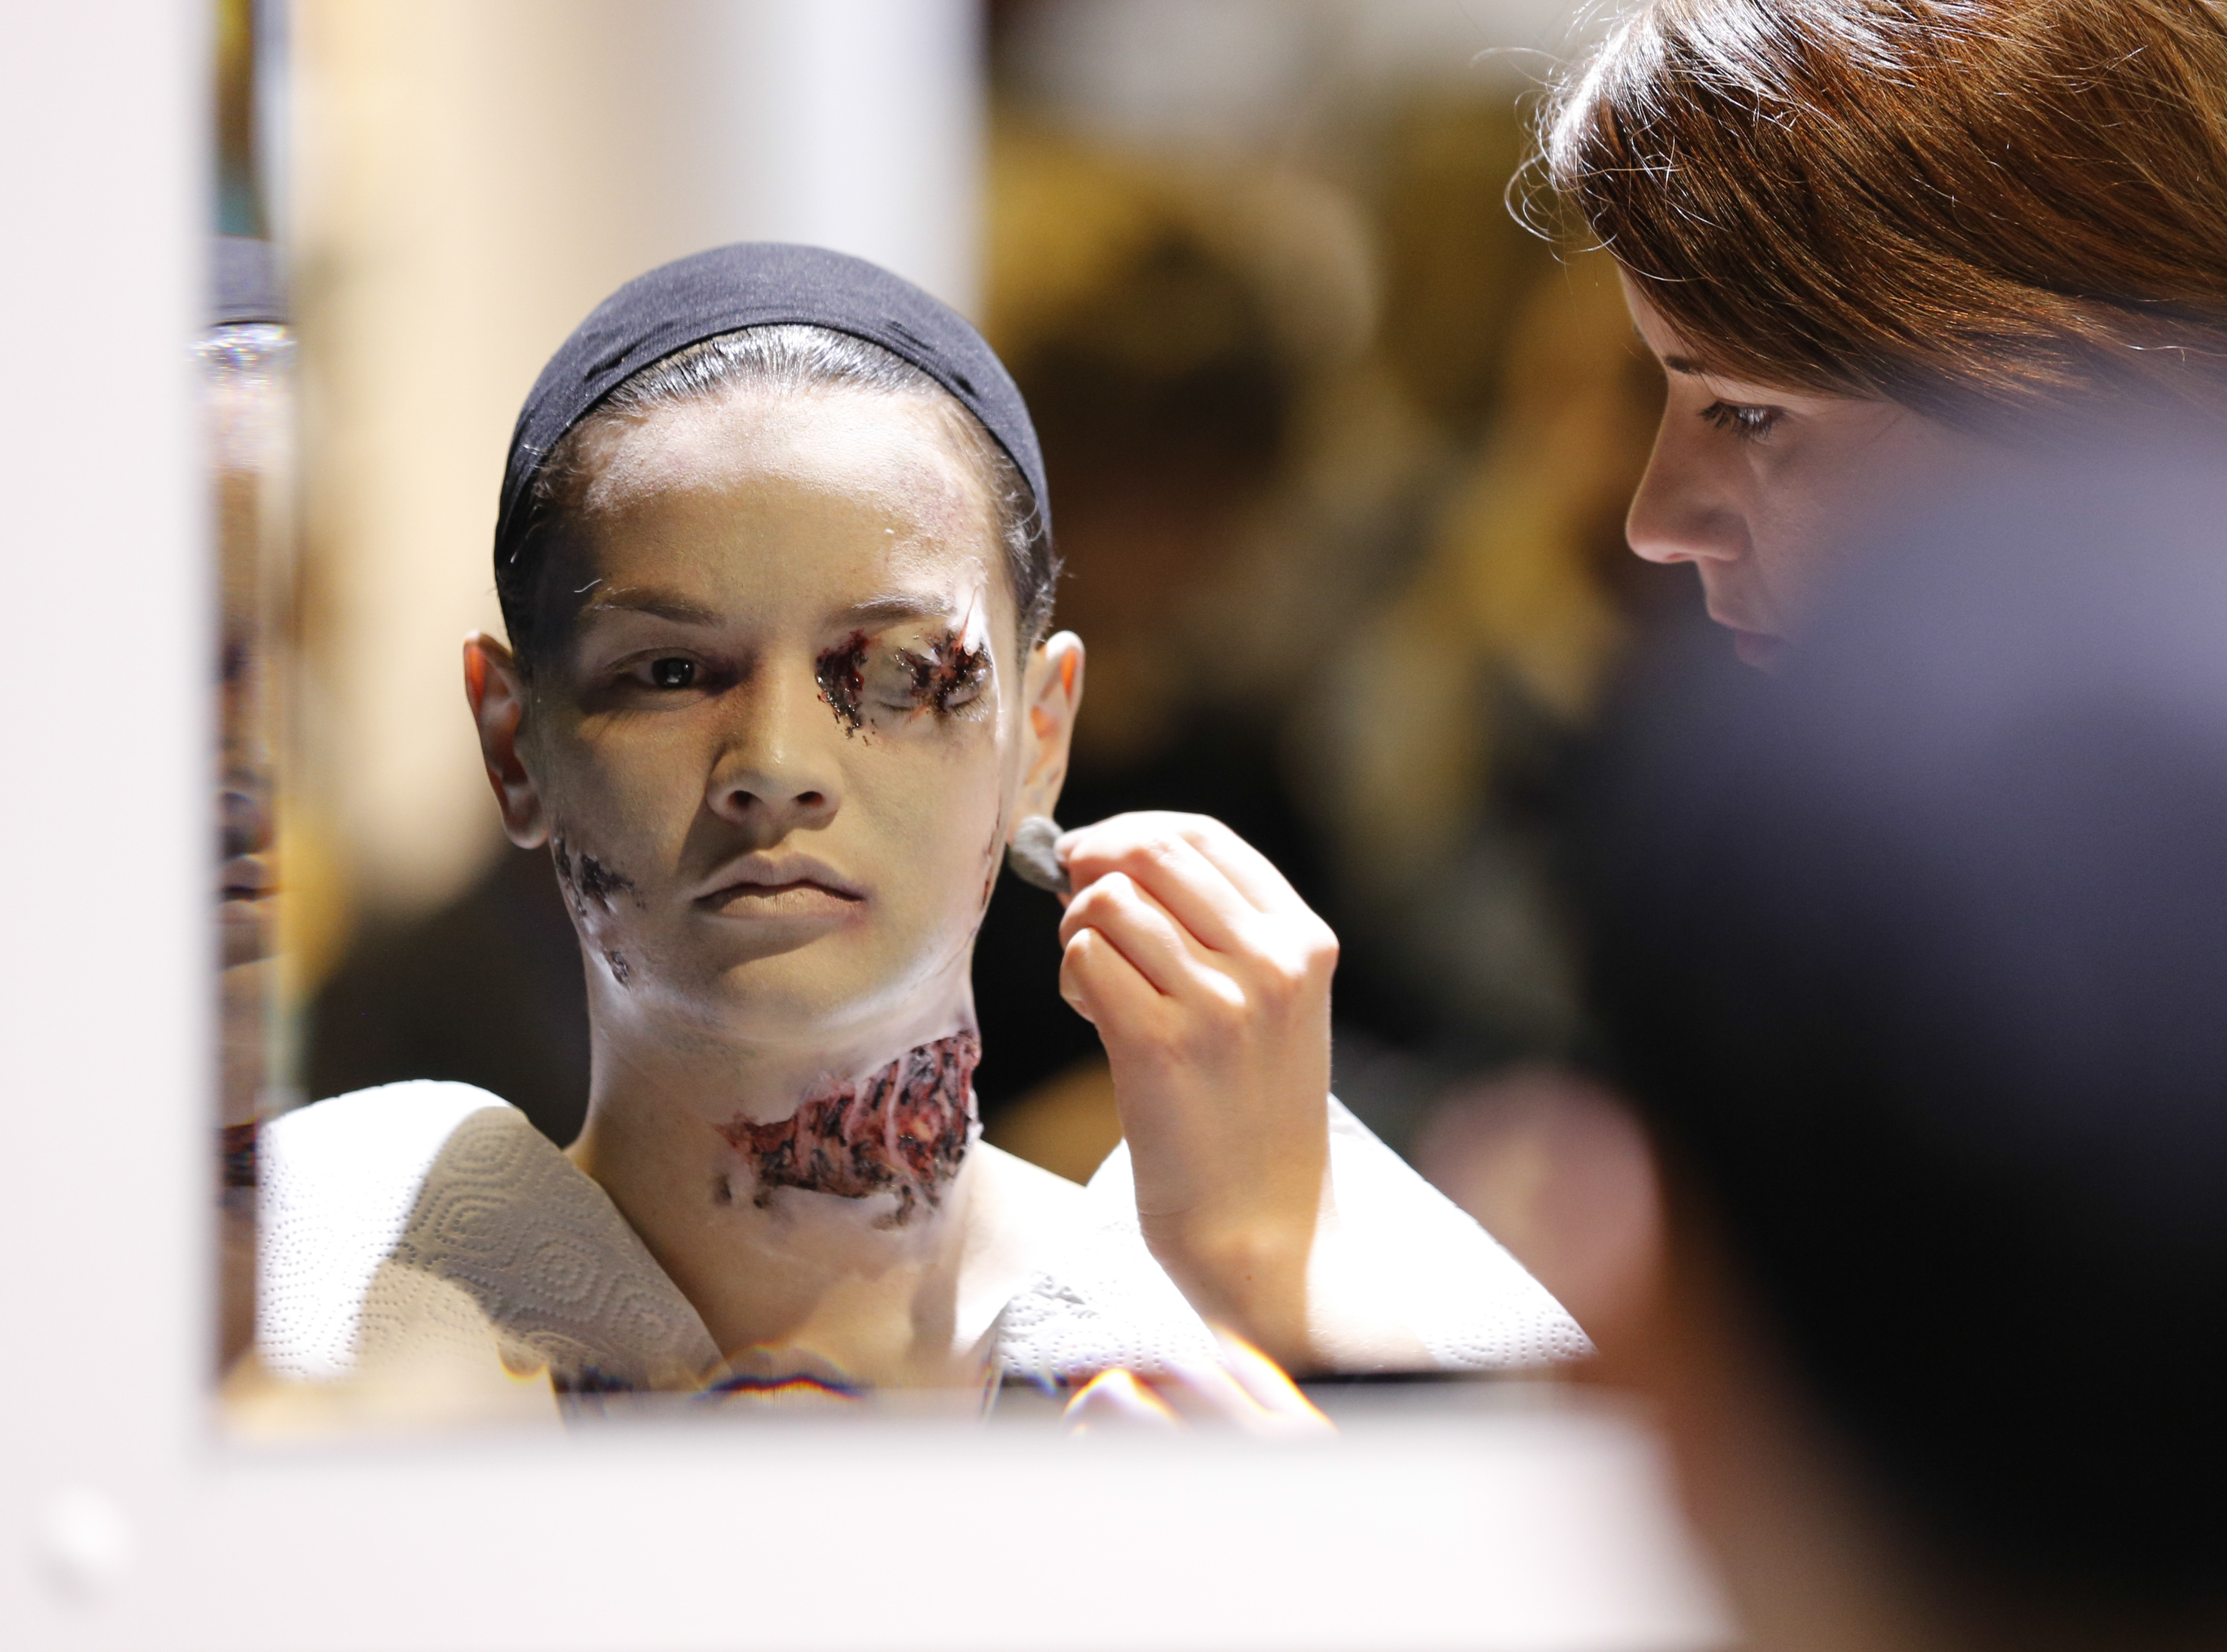 Maskenbildnerin Aisha King beim Schminken und Kleben von Prosthetics für ein SFX Make-up von einer Wasserleiche im Rahmen der Meisterschaft für Maskenbildner in Ausbildung.